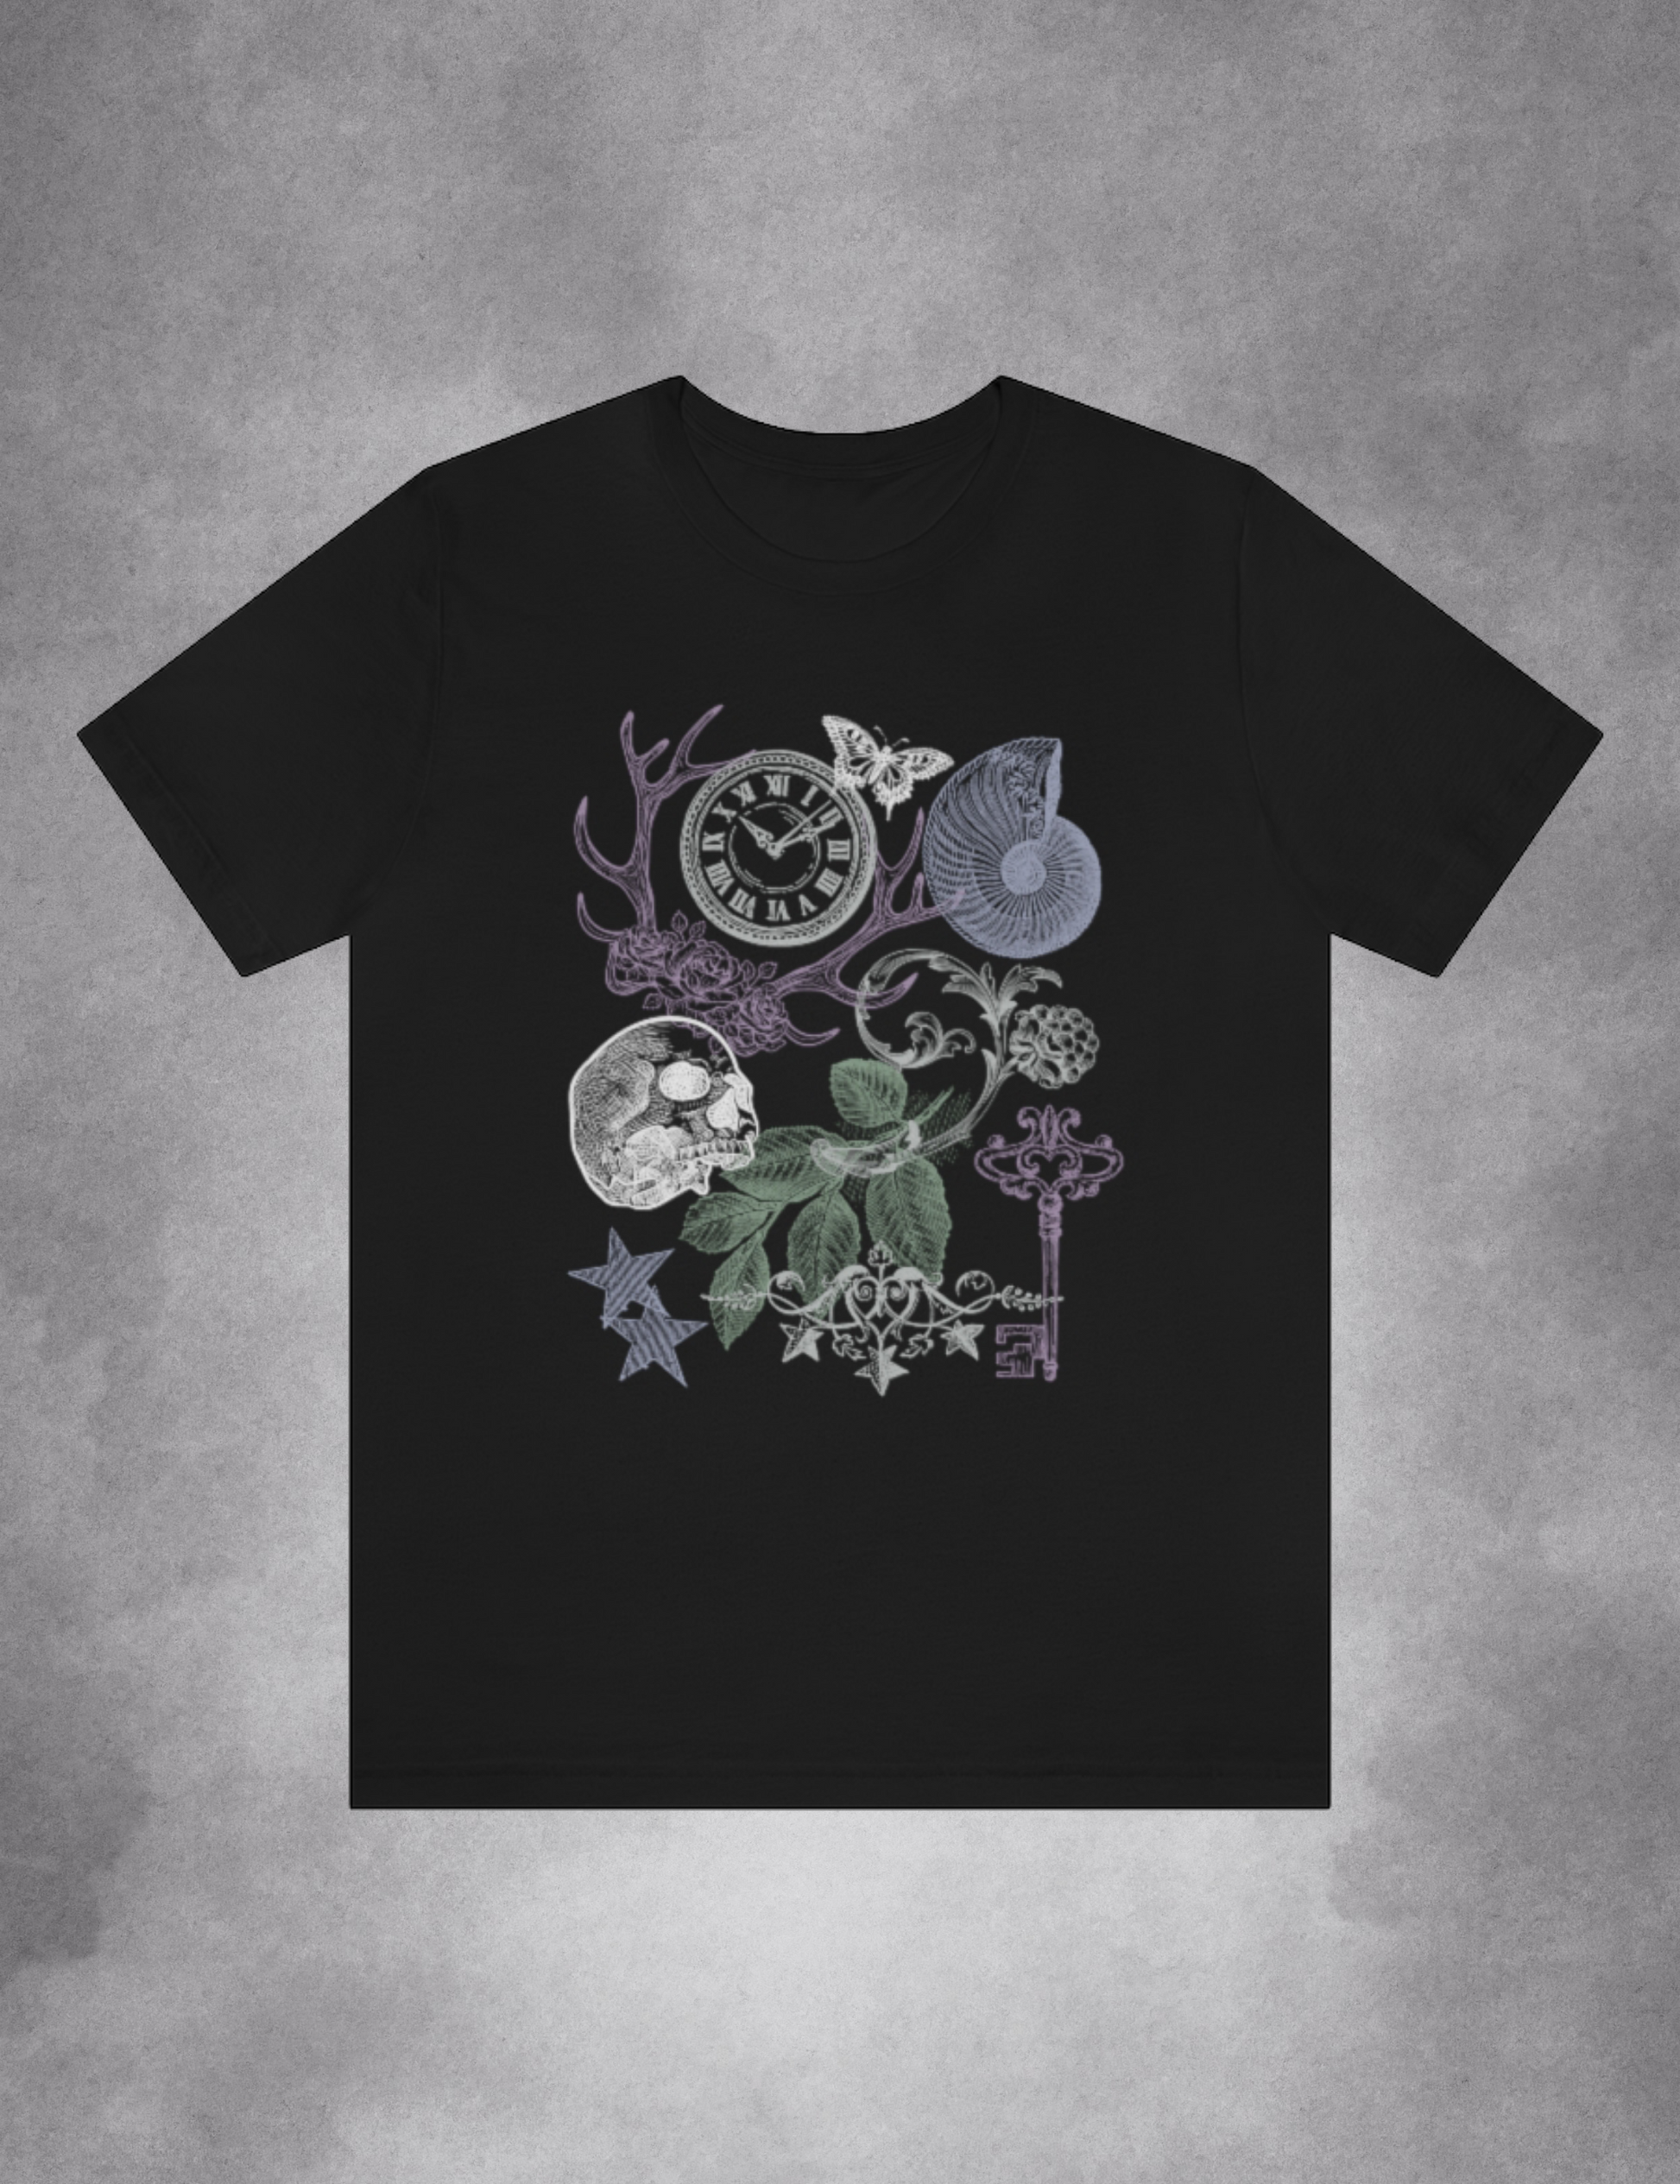 Goth Grunge Academia Aesthetic Plus Size Clothing Shirt